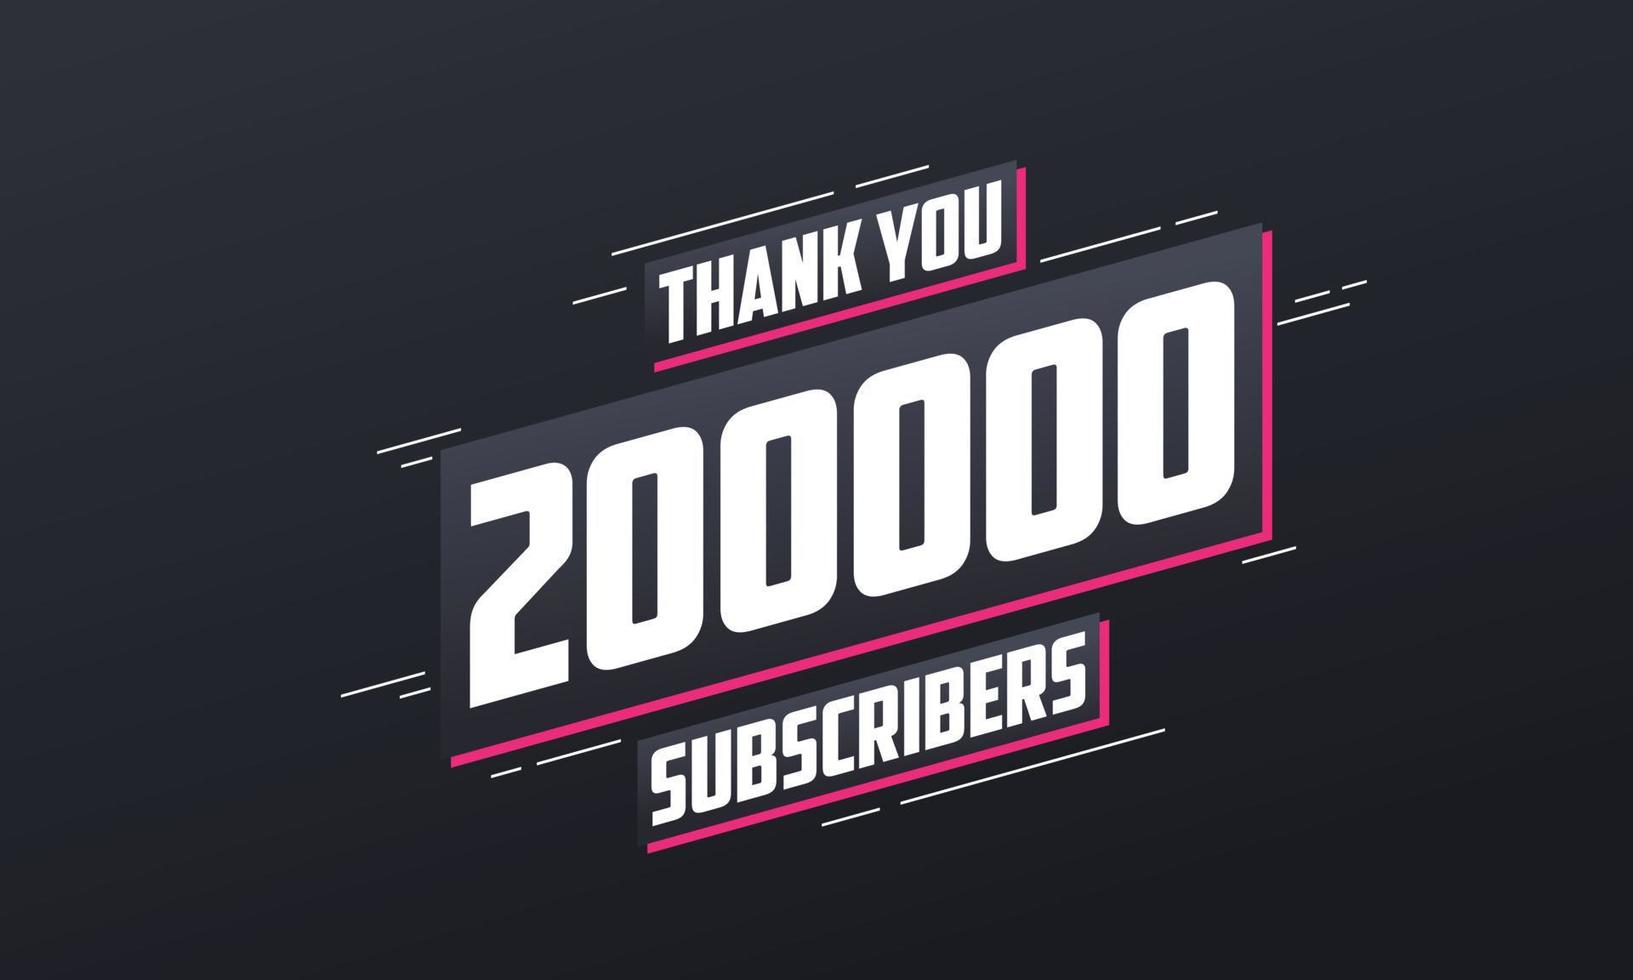 gracias 200000 suscriptores celebración de 200k suscriptores. vector